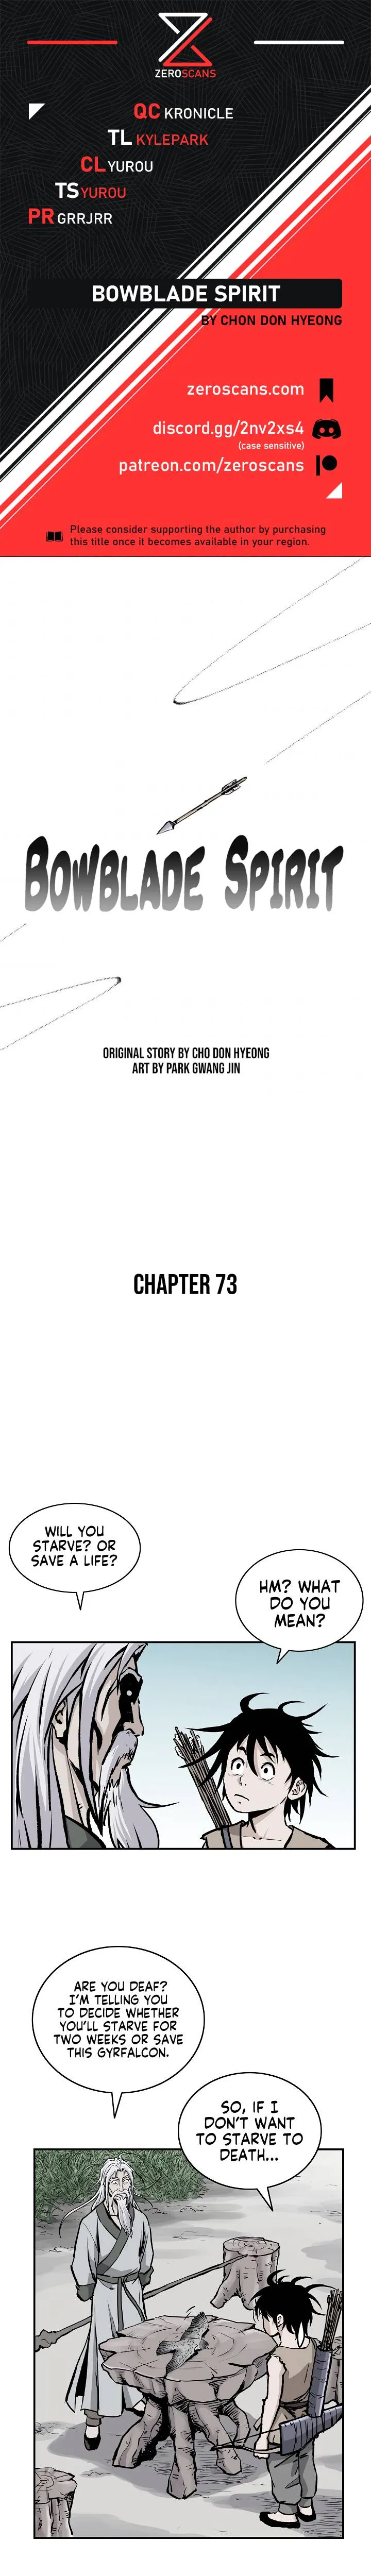 Bowblade Spirit Chapter 73 page 1